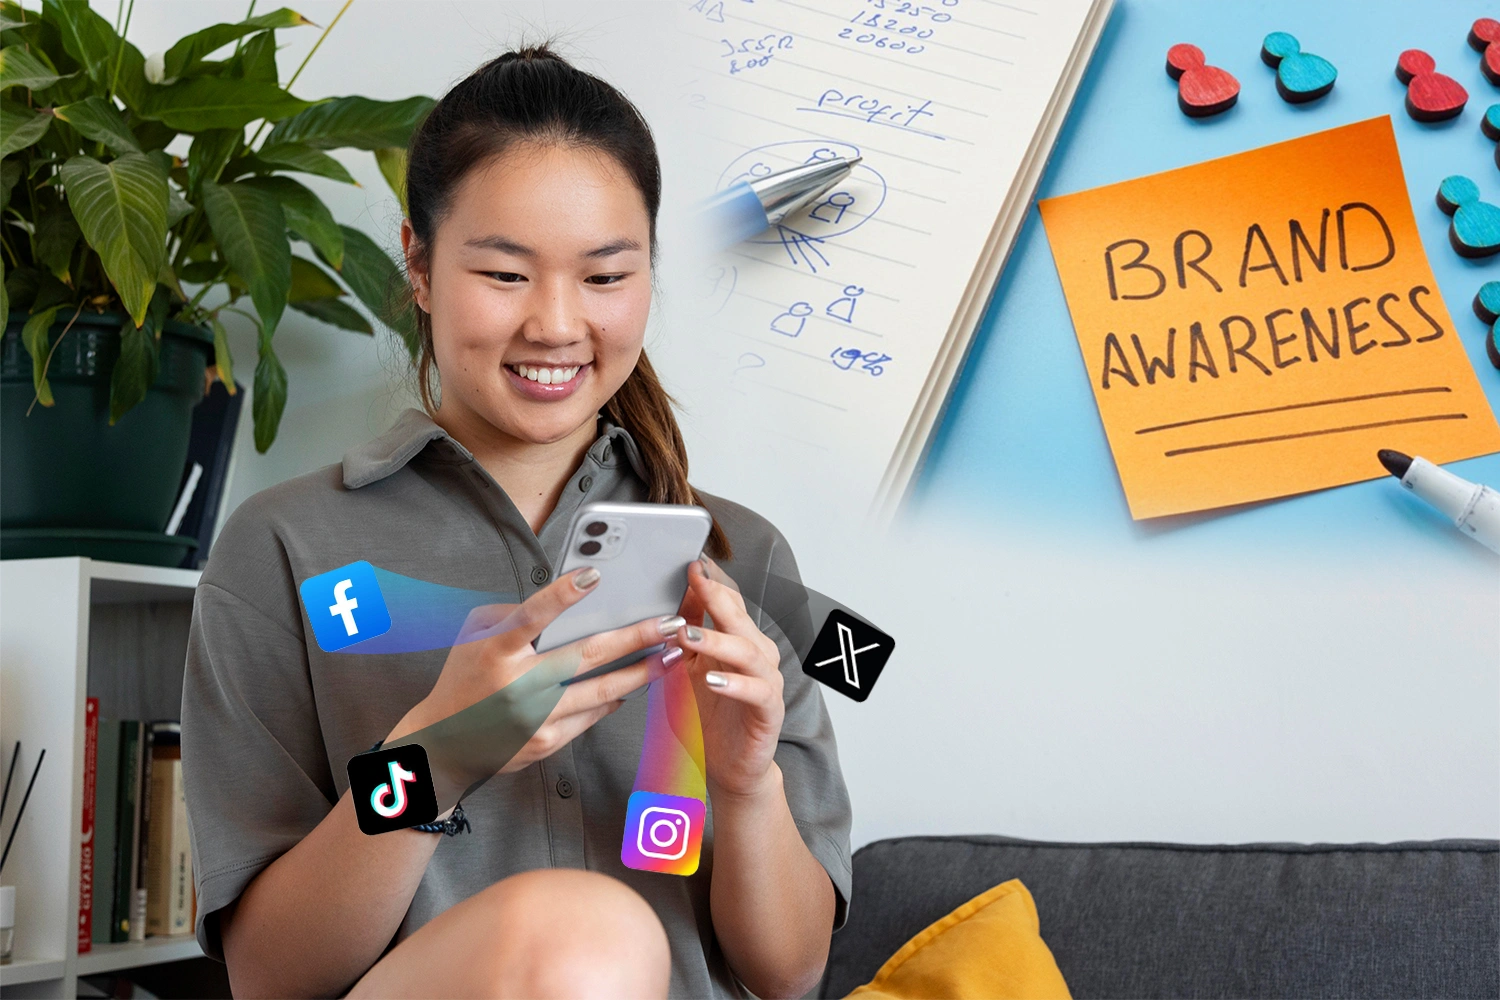 Seorang Pebisnis Sedang Memanfaatkan Social Media Sebagai Promosi Untuk Meningkatkan Brand Awareness.